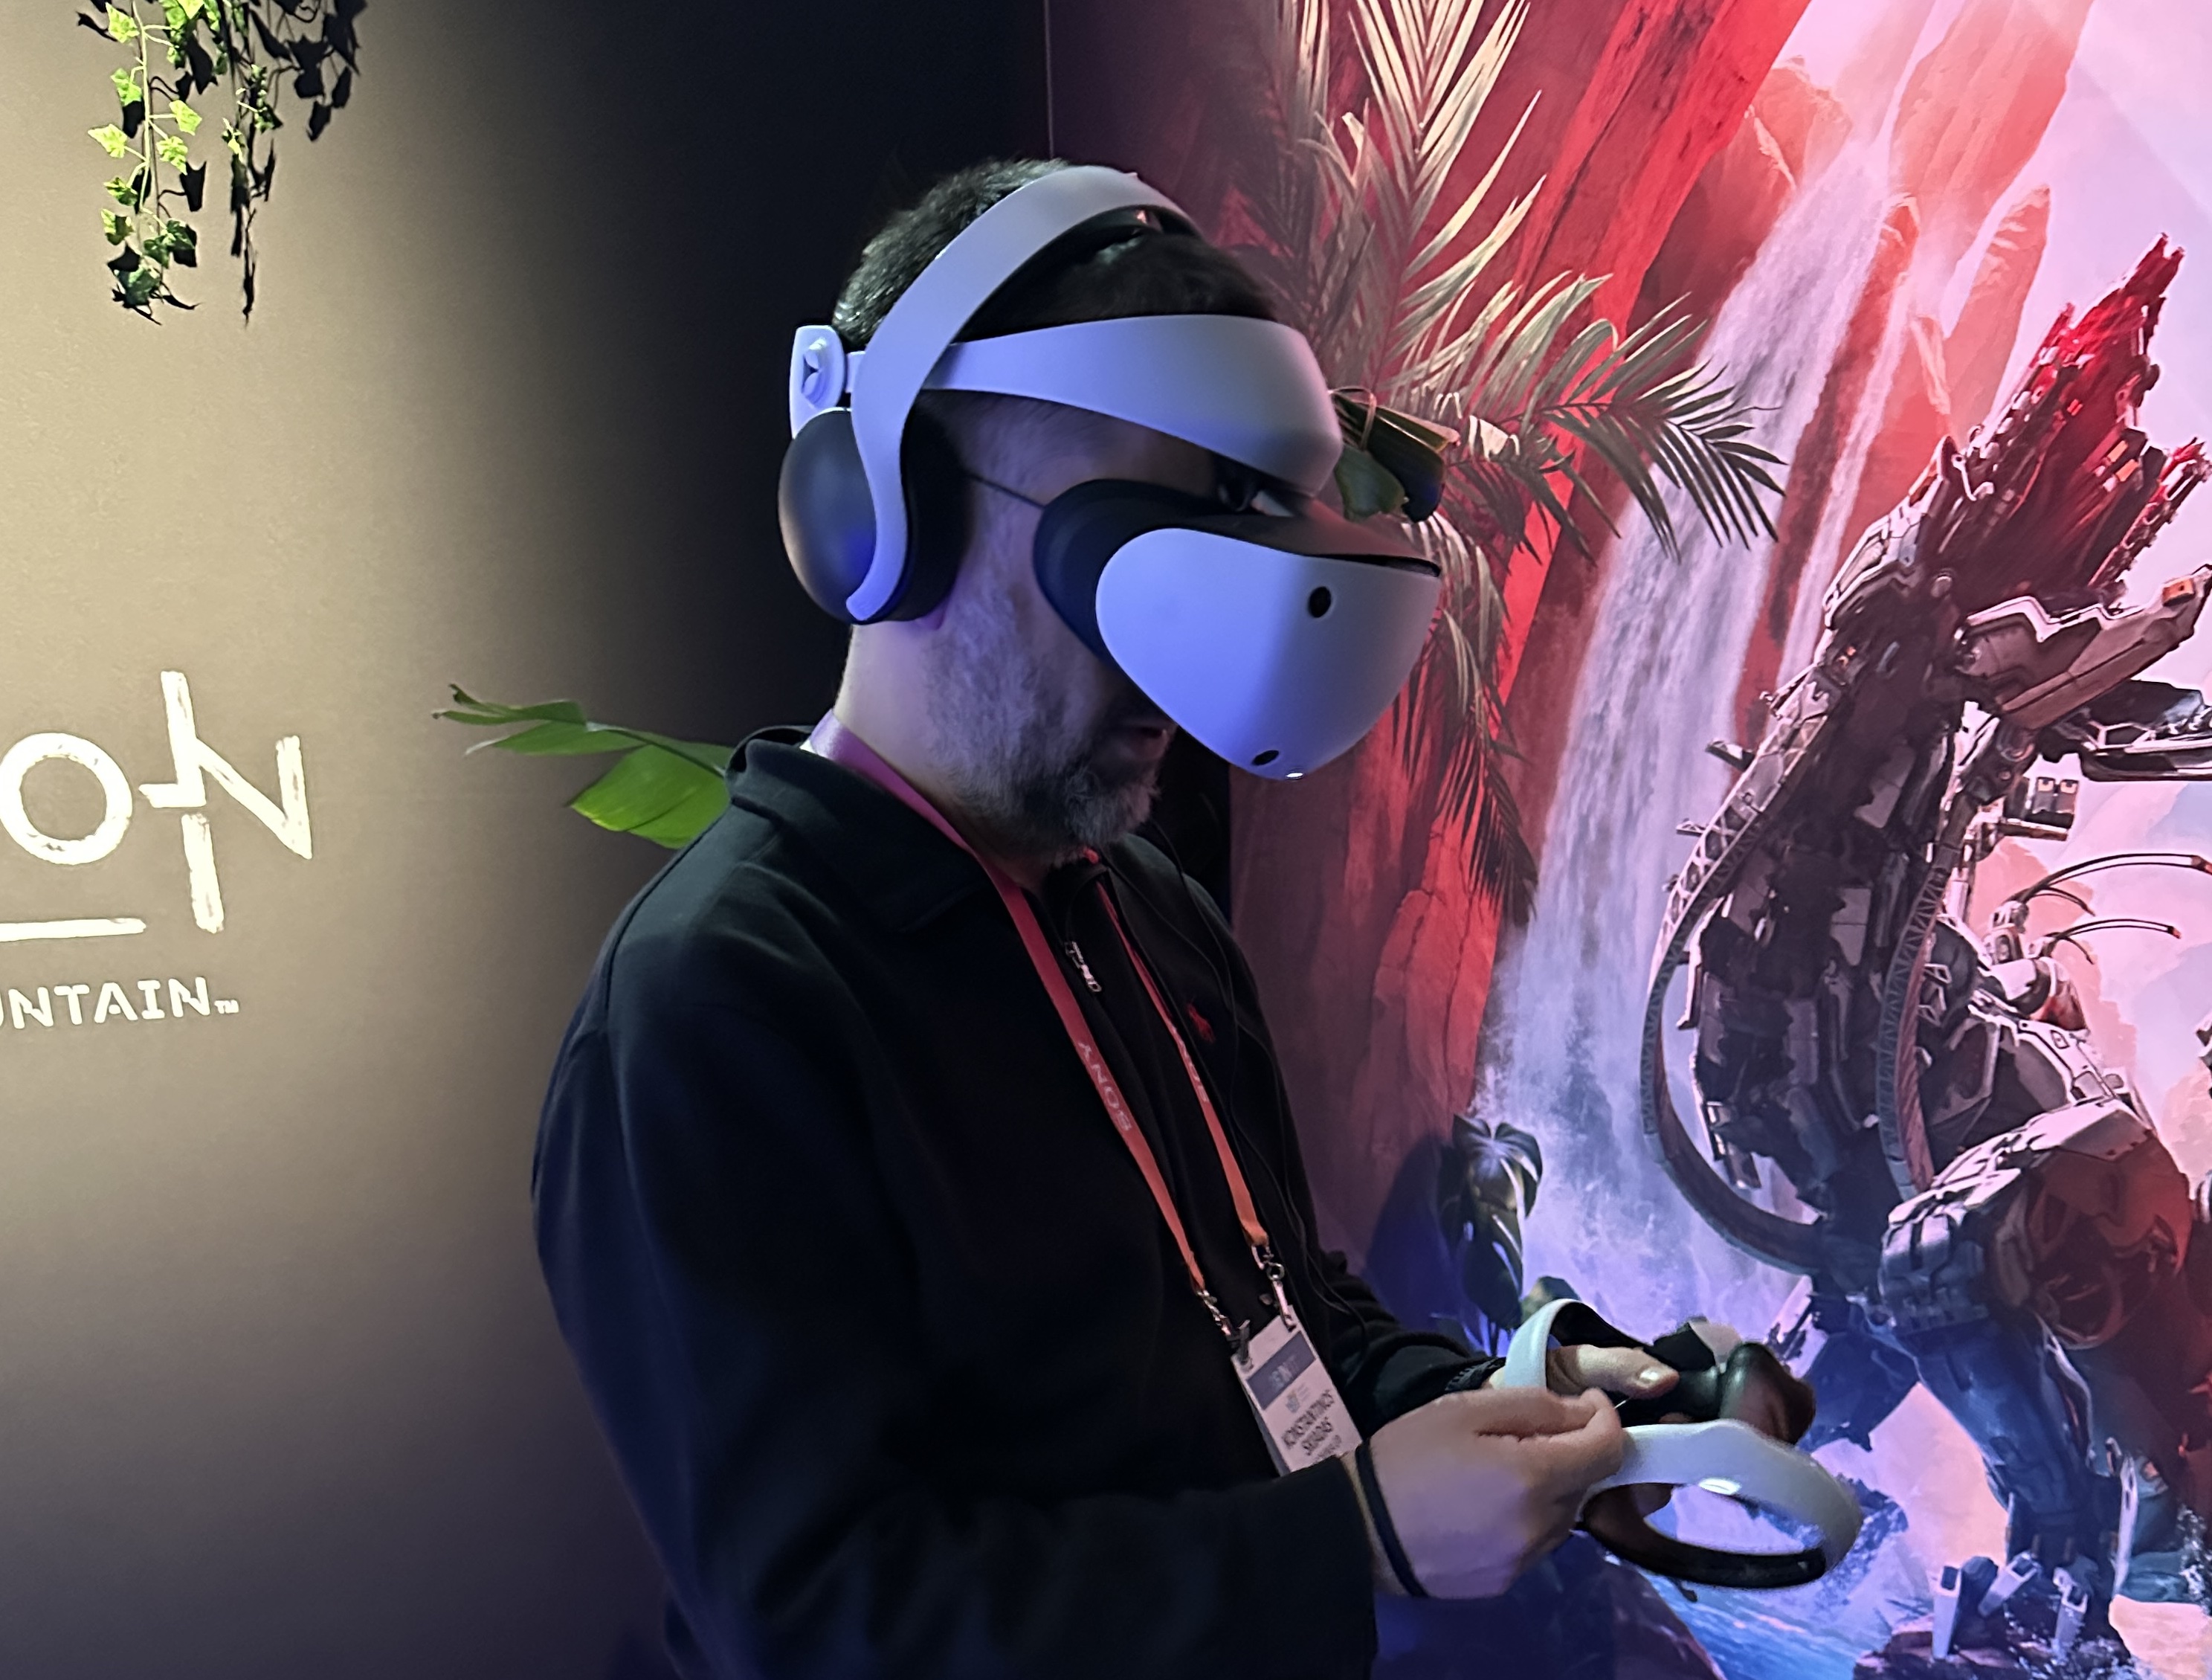 Παίζοντας με το PS VR2, το σύστημα εικονικής πραγματικότητας του PlayStation 5